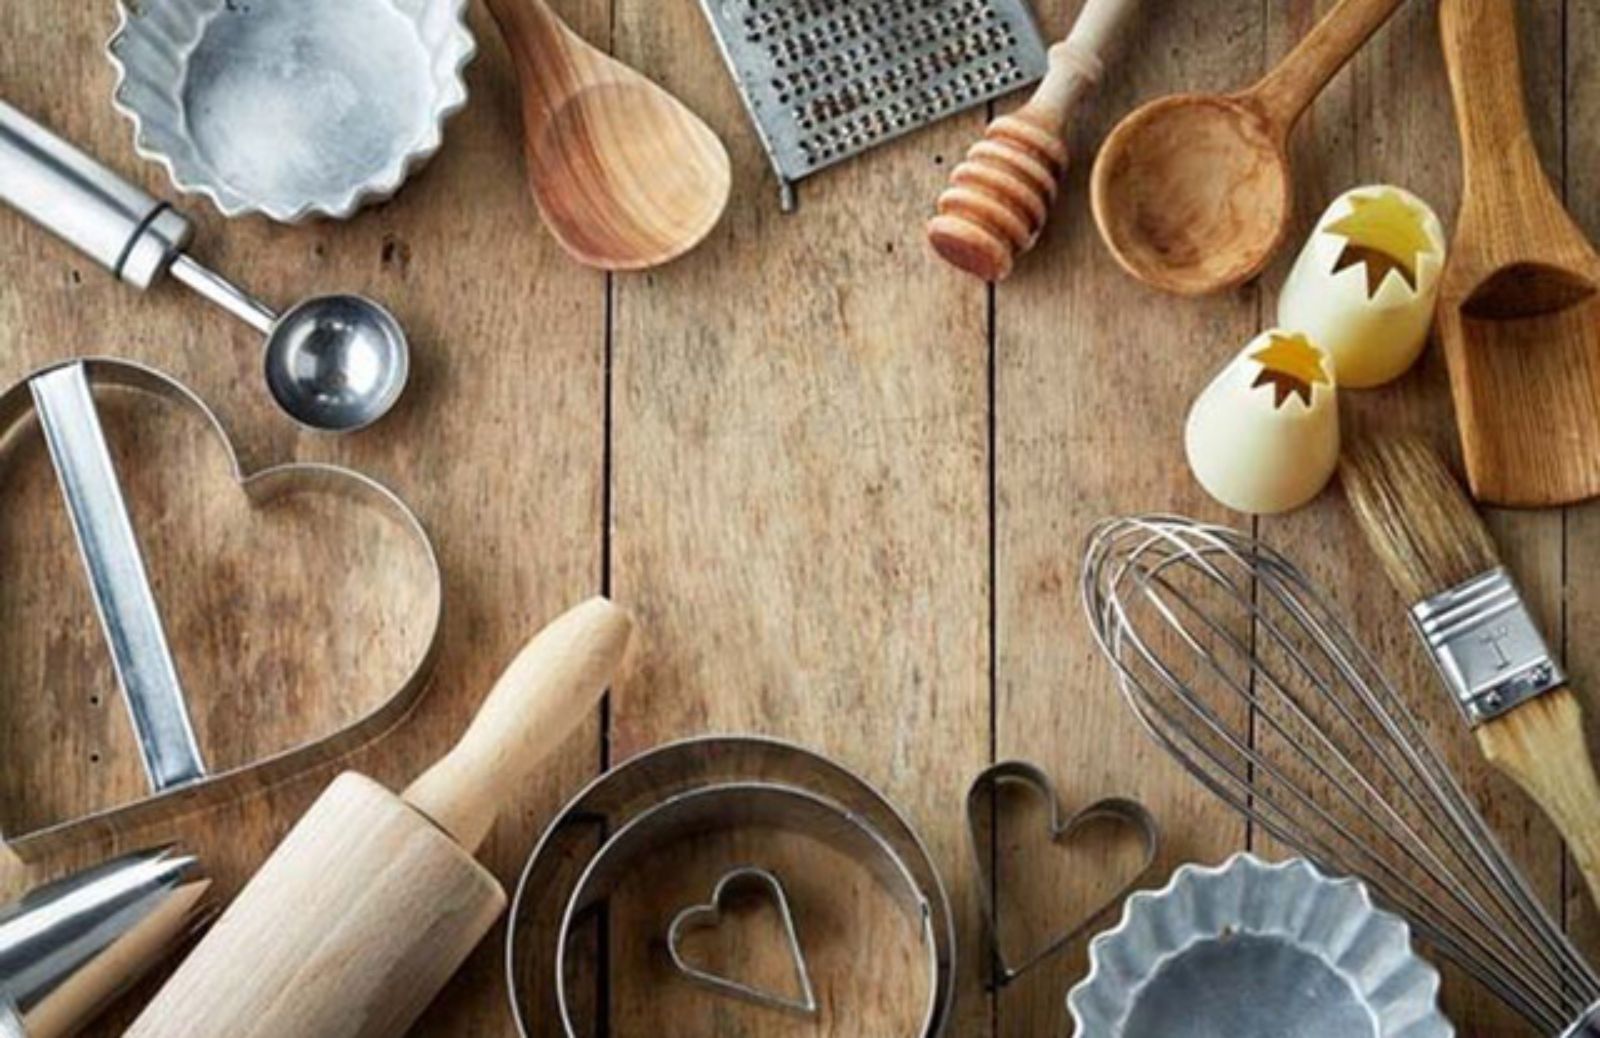 Le 5 cose che devi sostituire spesso in cucina